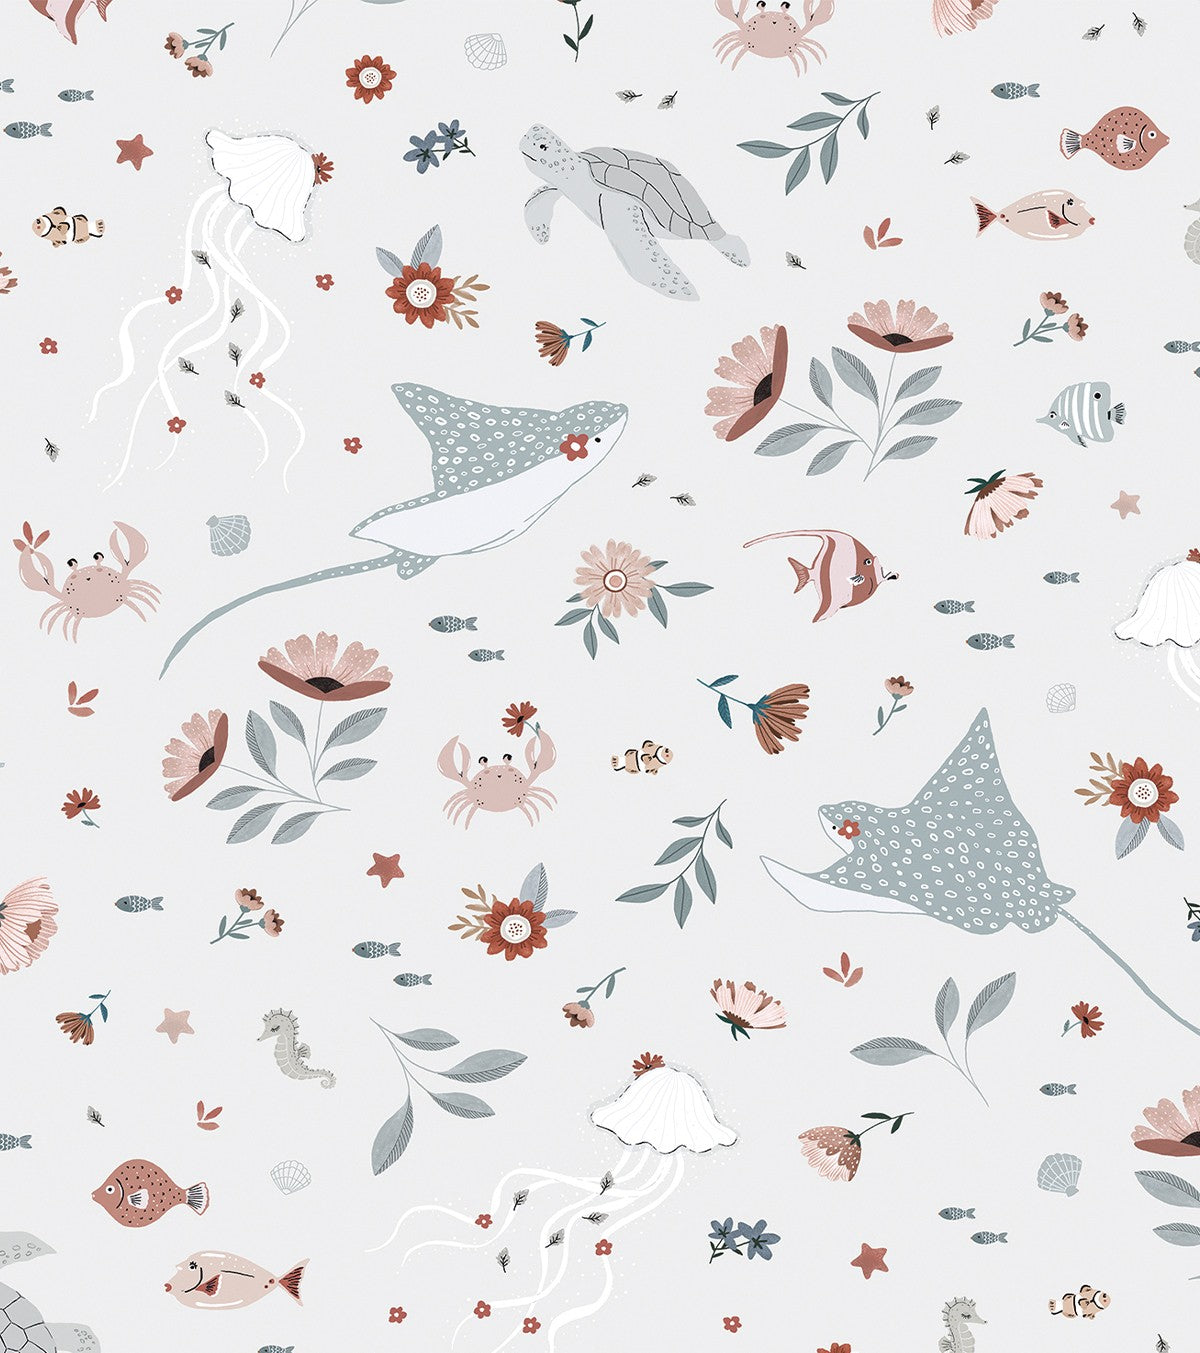 OCEAN FIELD - Children's wallpaper - Ocean animals motif